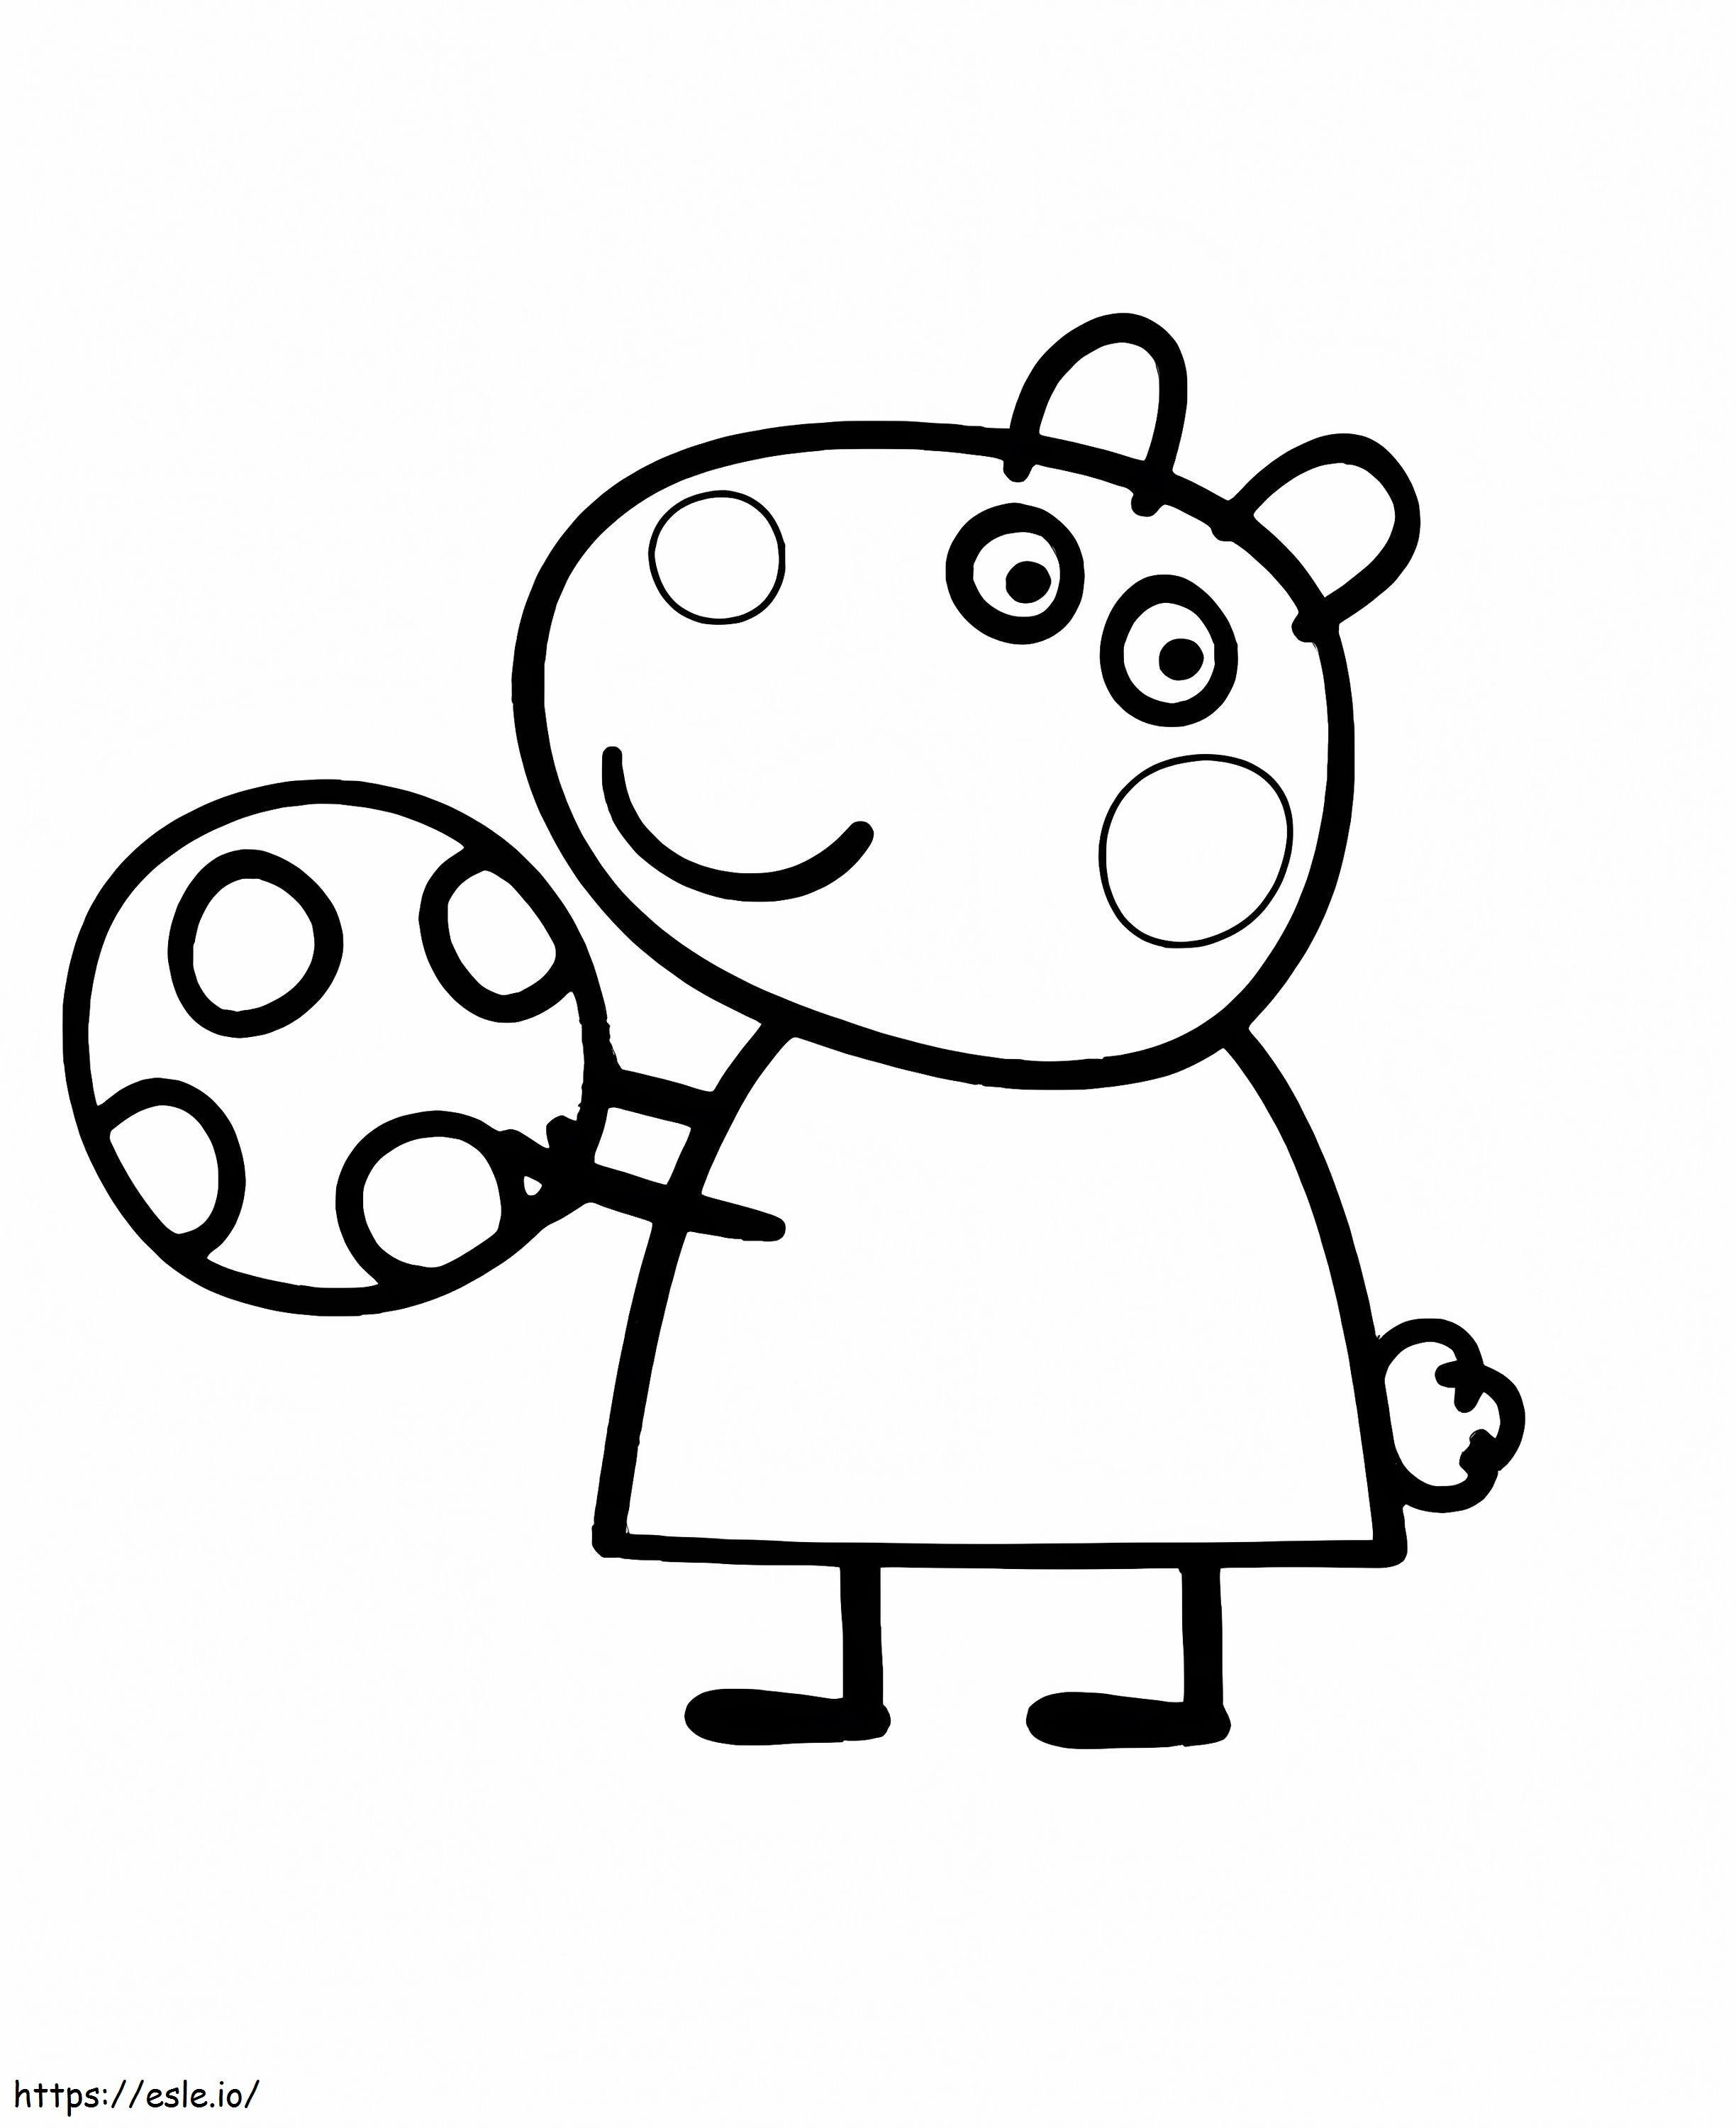 Suzy ovelha com uma bola para colorir